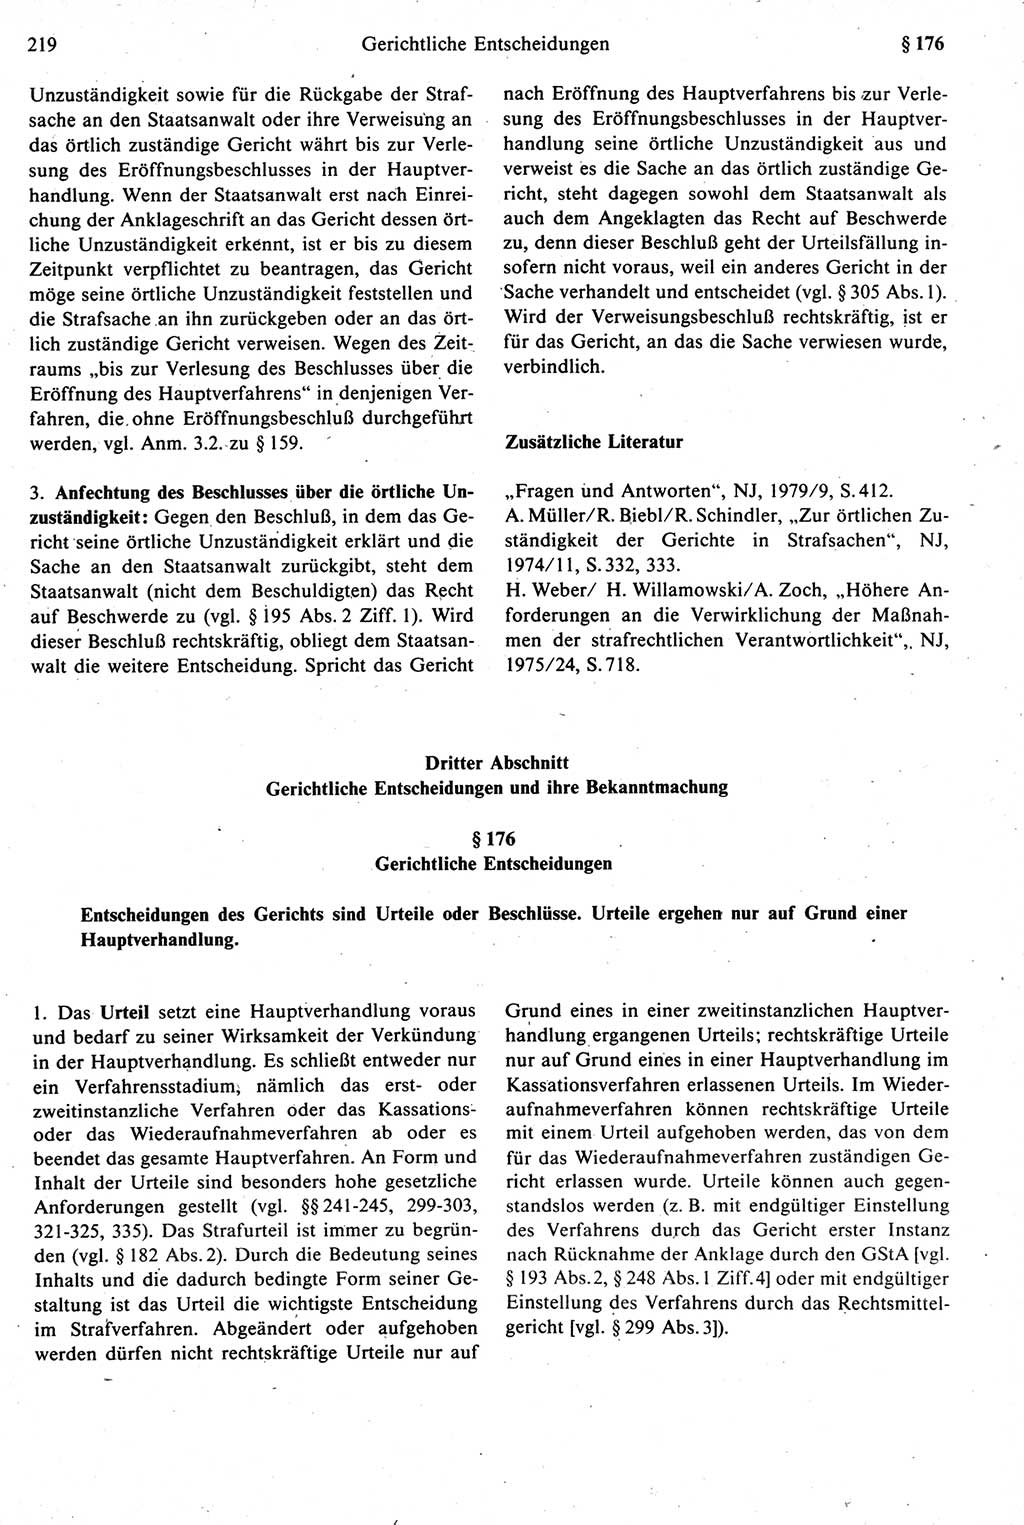 Strafprozeßrecht der DDR [Deutsche Demokratische Republik], Kommentar zur Strafprozeßordnung (StPO) 1987, Seite 219 (Strafprozeßr. DDR Komm. StPO 1987, S. 219)